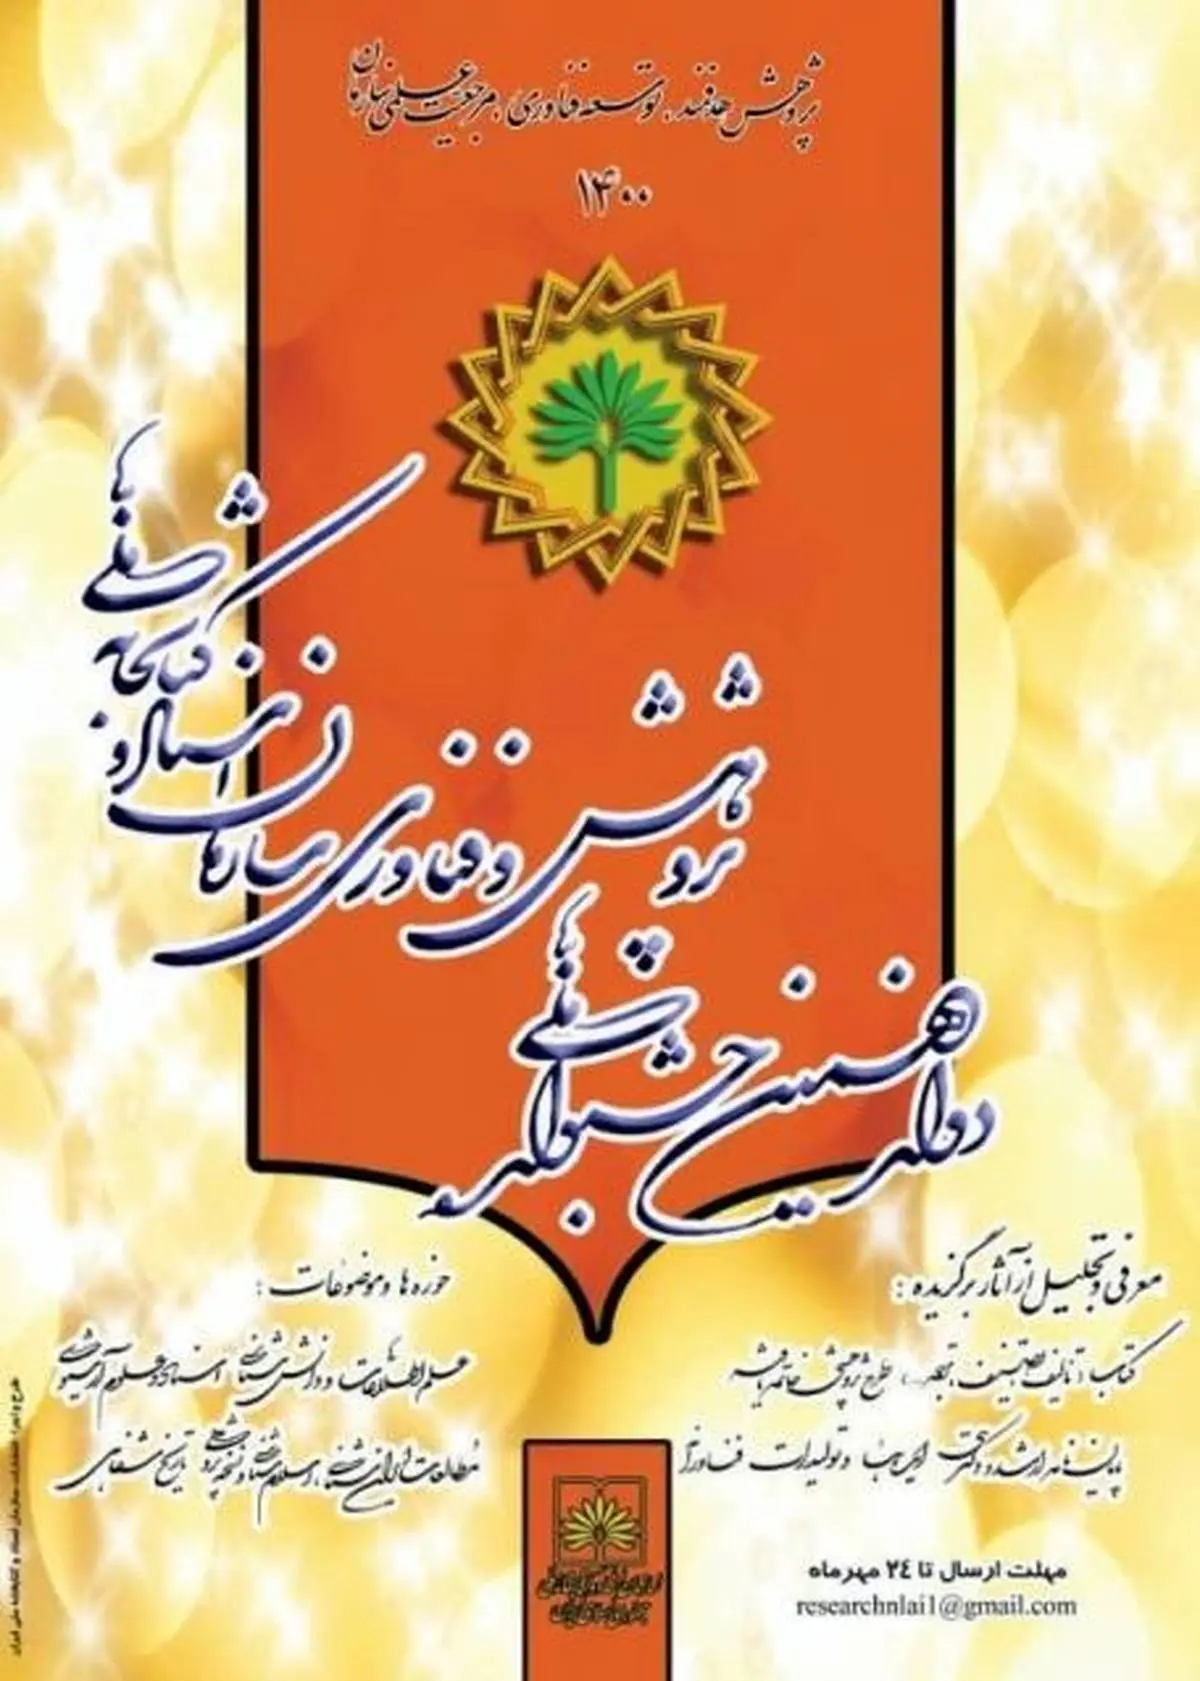 دوازدهمین جشنواره ملی پژوهش و فناوری سازمان اسناد و کتابخانه ملی ایران برگزار می شود